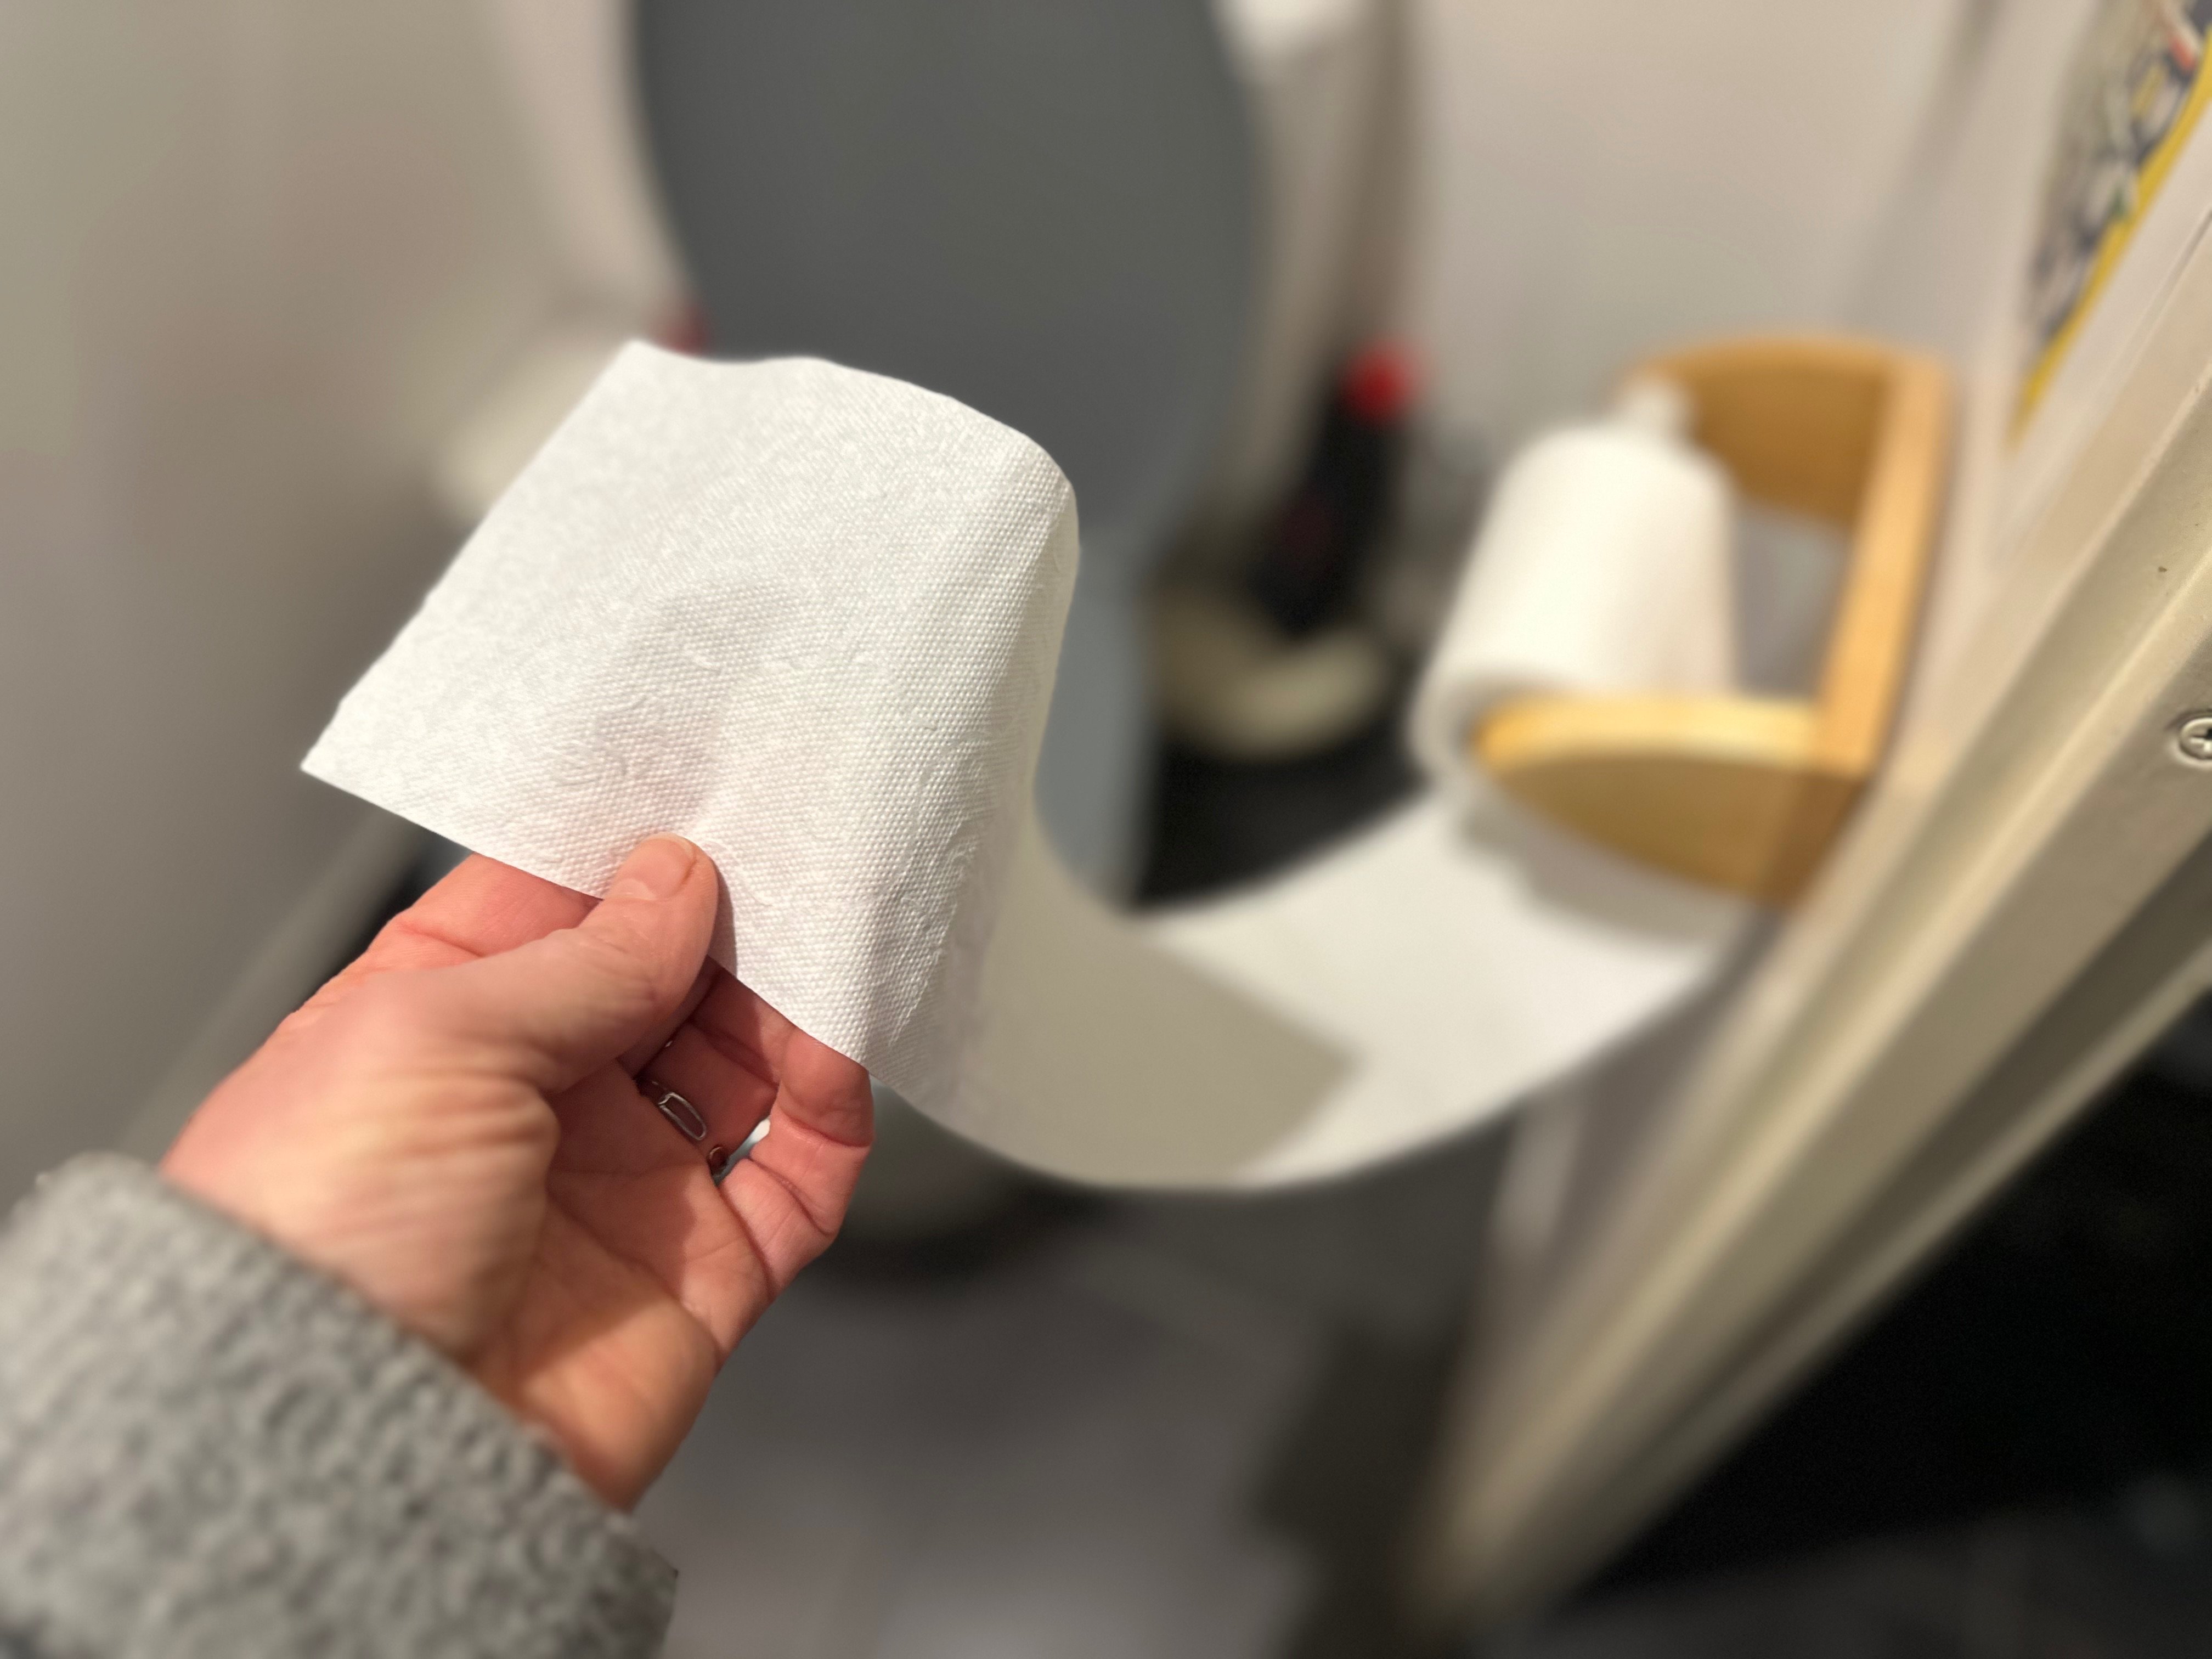 Le papier toilette, nouvelle source de pollution ?